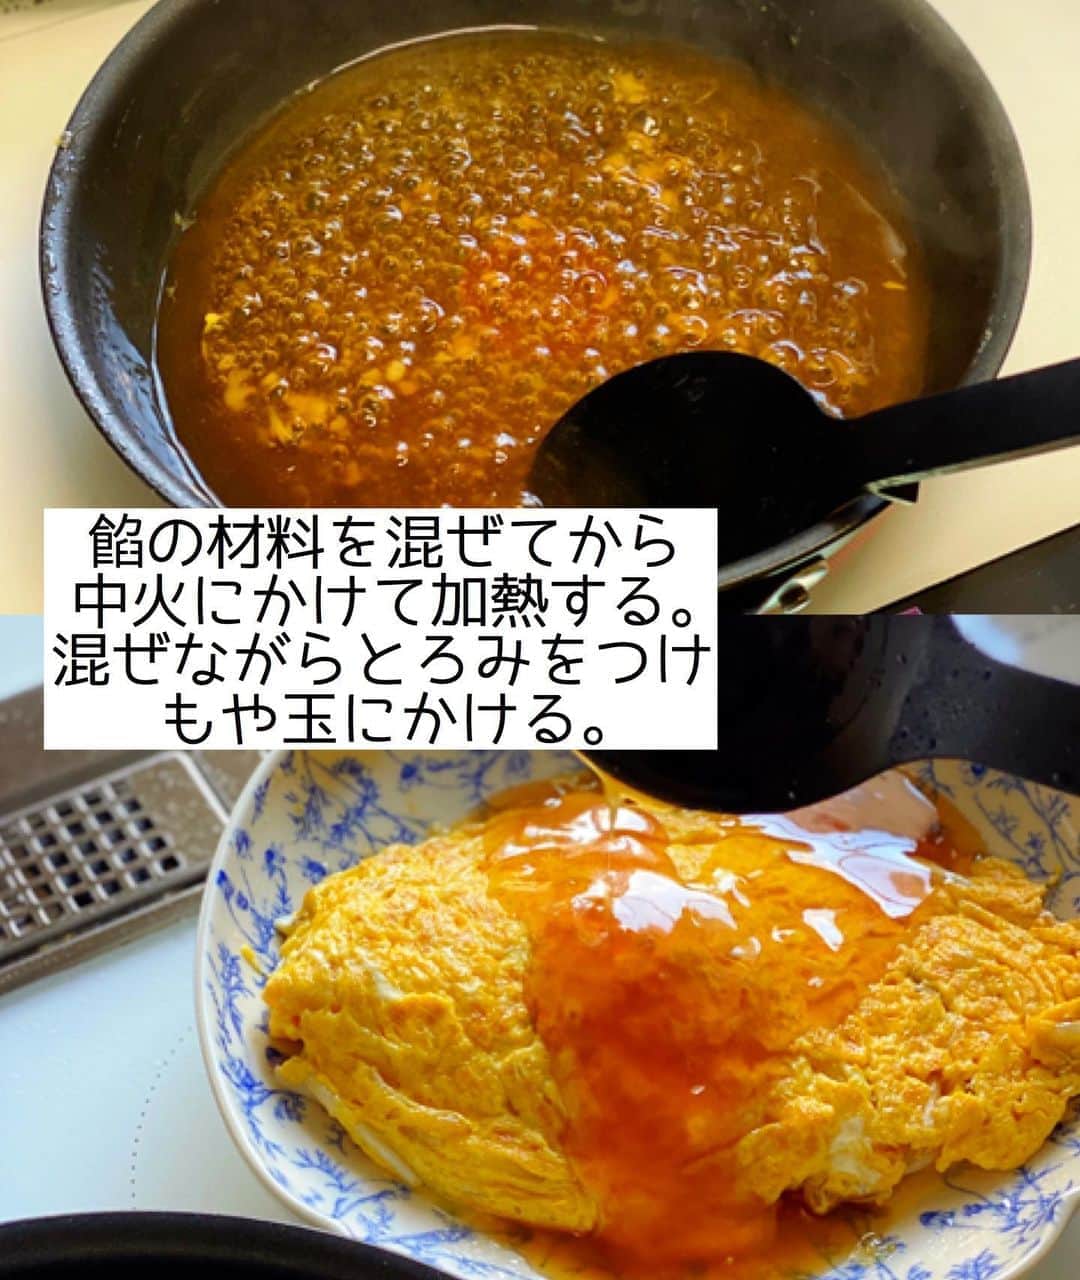 Mizuki【料理ブロガー・簡単レシピ】さんのインスタグラム写真 - (Mizuki【料理ブロガー・簡単レシピ】Instagram)「・﻿ 【レシピ】ーーーーーーー﻿ ♡もや玉中華あんかけ♡﻿ ーーーーーーーーーーーー﻿ ﻿ ﻿ ﻿ おはようございます(*^^*)﻿ ﻿ 今日ご紹介させていただくのは﻿ かに玉ならぬ \\もや玉//﻿ ということで説明するまでもなく﻿ カニの代わりにもやしを使った﻿ 簡単・時短・節約レシピです♡﻿ ﻿ ふんわり卵×シャキシャキもやしに﻿ とろ〜り中華あんが相性抜群♩﻿ コスパ最高&5分でできるので﻿ お気軽にお試し下さいね(*´艸`)﻿ ﻿ ﻿ ﻿ ーーーーーーーーーーーーーーーーーーーー﻿ 【2人分】﻿ 卵...3個﻿ 塩こしょう...少々﻿ もやし...1/2袋﻿ ごま油...大1﻿ ●水...150ml﻿ ●酒・オイスターソース...各小2﻿ ●片栗粉...大1/2﻿ ●鶏がらスープ...小1/3﻿ (あれば)万能ねぎ...適量﻿ ﻿ 1.ボウルで卵を溶きほぐし、塩こしょうを混ぜておく。﻿ 2.フライパンにごま油を中火で熱し、もやしをさっと炒める。1を流し入れて大きく混ぜ、半熟になったら器に盛り付けておく。﻿ 3.そのままのフライパンに●を入れ、よく混ぜてから中火にかける。混ぜながら加熱し、とろみがついたら2にかけ、斜め切りにしたねぎをのせる。﻿ ーーーーーーーーーーーーーーーーーーーー﻿ ﻿ ﻿ ﻿ 《ポイント》﻿ ♦︎卵が半熟になったら適当に形を整えて盛り付けて下さい♩﻿ ♦︎●をフライパンに入れたら手早く混ぜ、絶えず混ぜながら加熱して下さい♩﻿ ﻿ ﻿ ﻿ ﻿ ﻿ ﻿ ﻿ ＿＿＿＿＿＿＿＿＿＿＿＿＿＿＿＿＿＿＿﻿ 📕7刷重版しました📕﻿ 簡単・時短！ 毎日のごはんがラクになる﻿ ✨🦋 【 #Mizukiの今どき和食 】🦋✨﻿ ＿＿＿＿＿＿＿＿＿＿＿＿＿＿＿＿＿＿＿﻿ なるべく少ない材料で﻿ 手間も時間も省きながら﻿ 簡単にできるおいしい和食レシピ♩﻿ 簡単に失敗なくマスターできる一冊で﻿ もっと気軽に、カジュアルに﻿ 和食を楽しんで下さいね(*^^*)﻿ ＿＿＿＿＿＿＿＿＿＿＿＿＿＿＿＿＿＿＿﻿ ﻿ ﻿ ﻿ ＿＿＿＿＿＿＿＿＿＿＿＿＿＿＿＿＿＿＿﻿ 🎀6刷重版しました🎀﻿ 混ぜて焼くだけ。はじめてでも失敗しない！﻿ 【#ホットケーキミックスのお菓子 】﻿ ﻿ 一冊まるっとホケミスイーツ♩﻿ 普段のおやつから﻿ 特別な日にも使えるレシピを﻿ この一冊に詰め込みました(*^^*)﻿ ホットケーキミックスを使えば﻿ 簡単に本格的なお菓子が作れますよ♡﻿ ＿＿＿＿＿＿＿＿＿＿＿＿＿＿＿＿＿﻿ ﻿ ﻿ ﻿ ﻿ ￣￣￣￣￣￣￣￣￣￣￣￣￣￣￣￣￣￣﻿ レシピを作って下さった際や﻿ レシピ本についてのご投稿には﻿ タグ付け( @mizuki_31cafe )して﻿ お知らせいただけると嬉しいです😊💕﻿ ＿＿＿＿＿＿＿＿＿＿＿＿＿＿＿＿＿＿﻿ ﻿ ﻿ ﻿ ﻿ ﻿ #もやし#卵#もや玉#あんかけ#中華あんかけ#コスパ﻿ #Mizuki#簡単レシピ#時短レシピ#節約レシピ#料理#レシピ#フーディーテーブル#マカロニメイト#おうちごはん#デリスタグラマー#料理好きな人と繋がりたい#食べ物#料理記録#おうちごはんlover#写真好きな人と繋がりたい#foodpic#cooking#recipe#lin_stagrammer#foodporn#yummy#もや玉中華あんかけm」8月31日 6時52分 - mizuki_31cafe